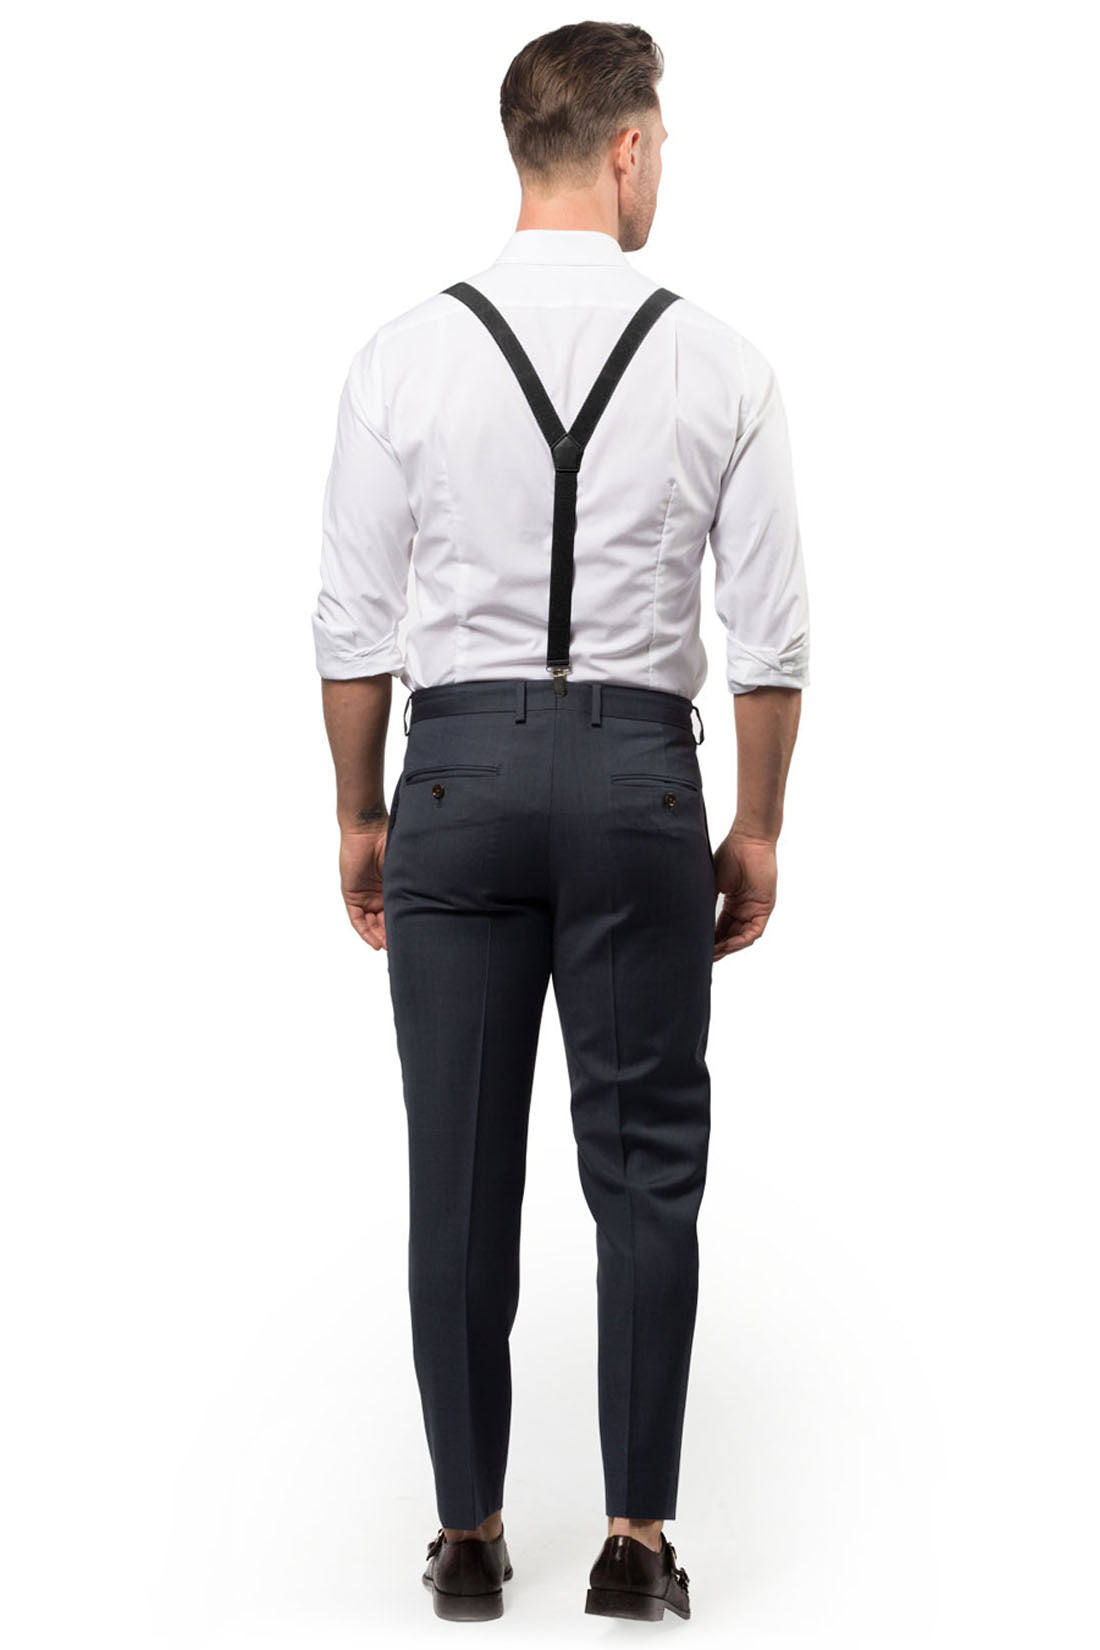 Black Suspenders & Black Bow Tie - Baby to Adult Sizes– Armoniia